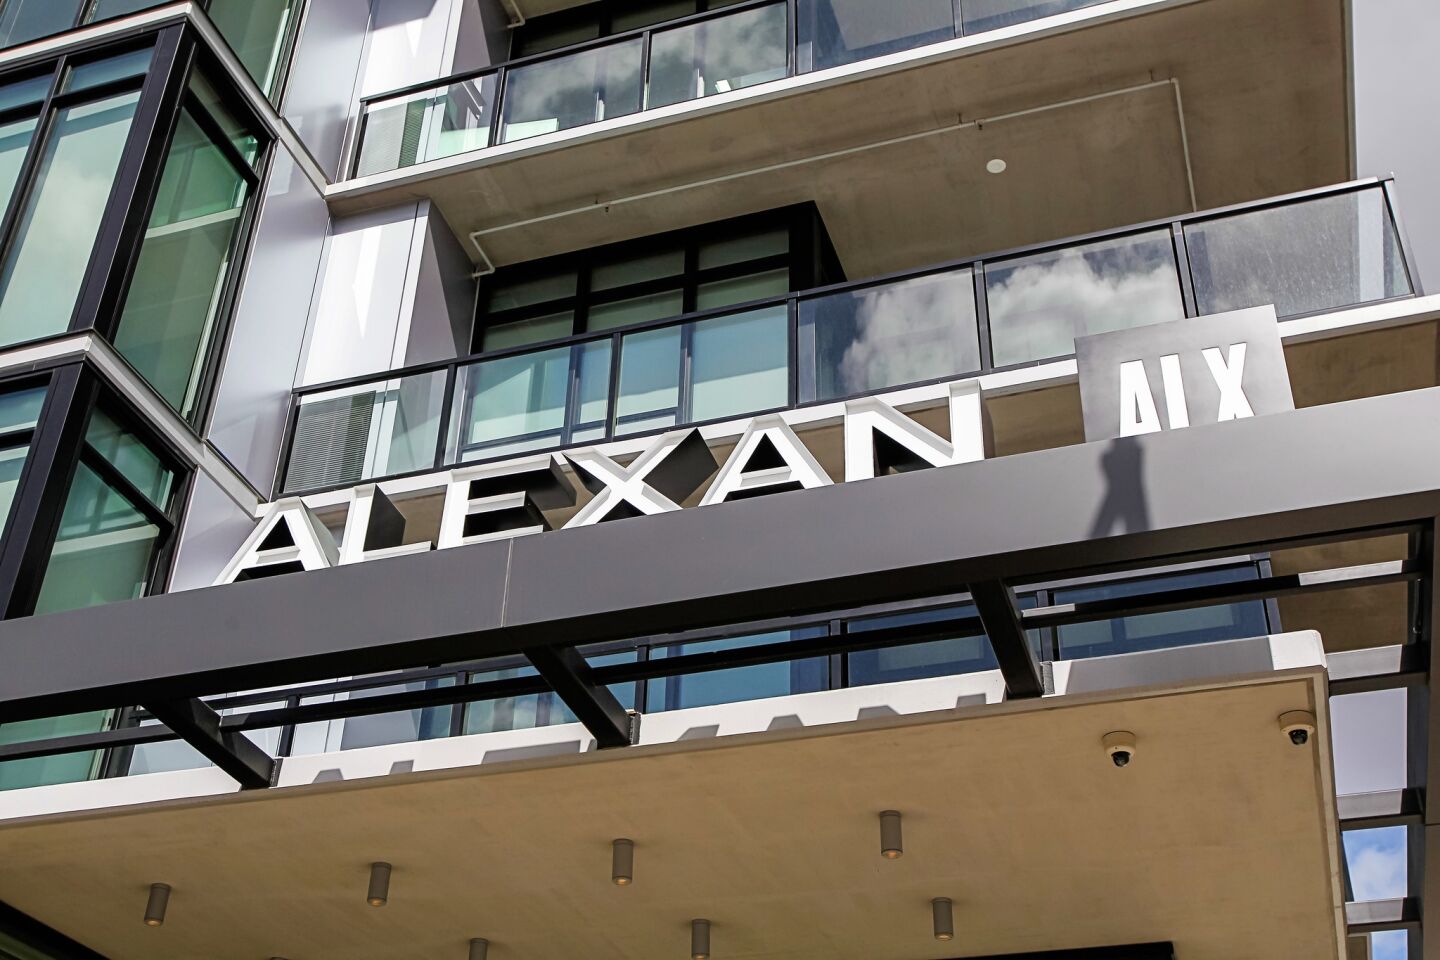 The Alexan ALX luxury apartments.